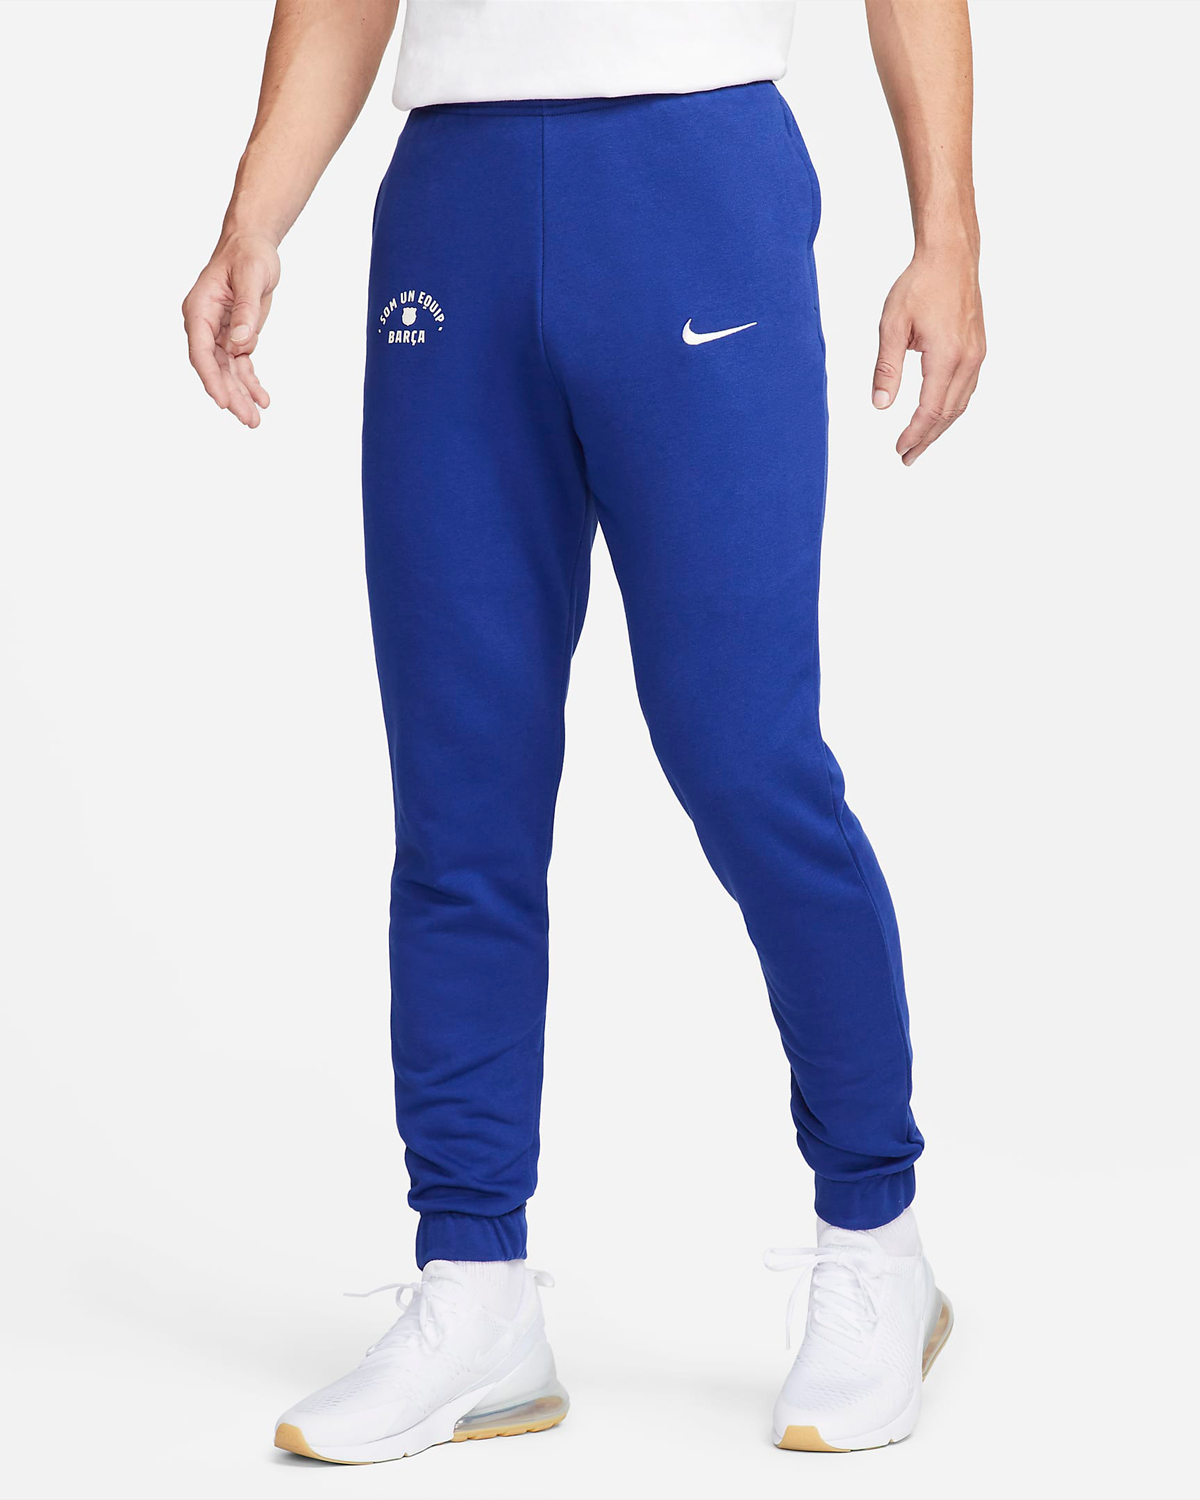 Nike-FC-Barcelona-Pants-Deep-Royal-Blue